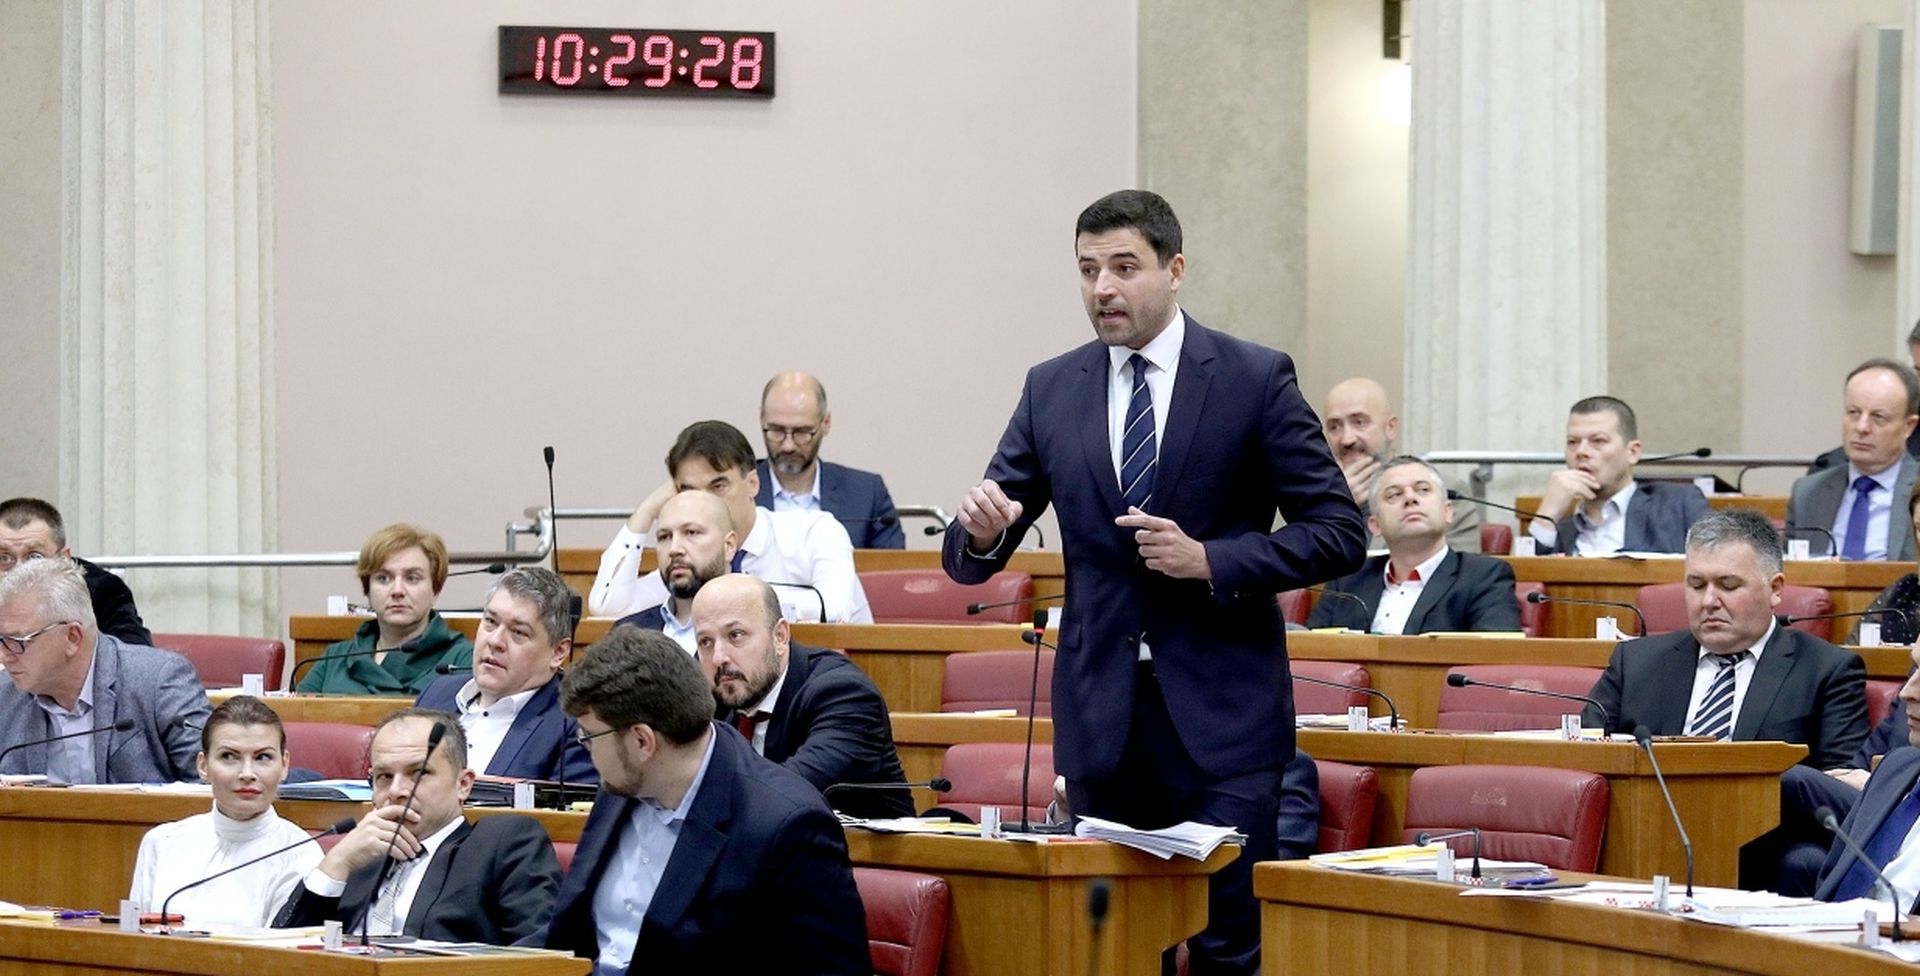 14.11.2019., Zagreb - Sabor je 14. sjednicu nastavio glasovanjem o raspravljenim tockama dnevnog reda. 
Photo: Patrik Macek/PIXSELL